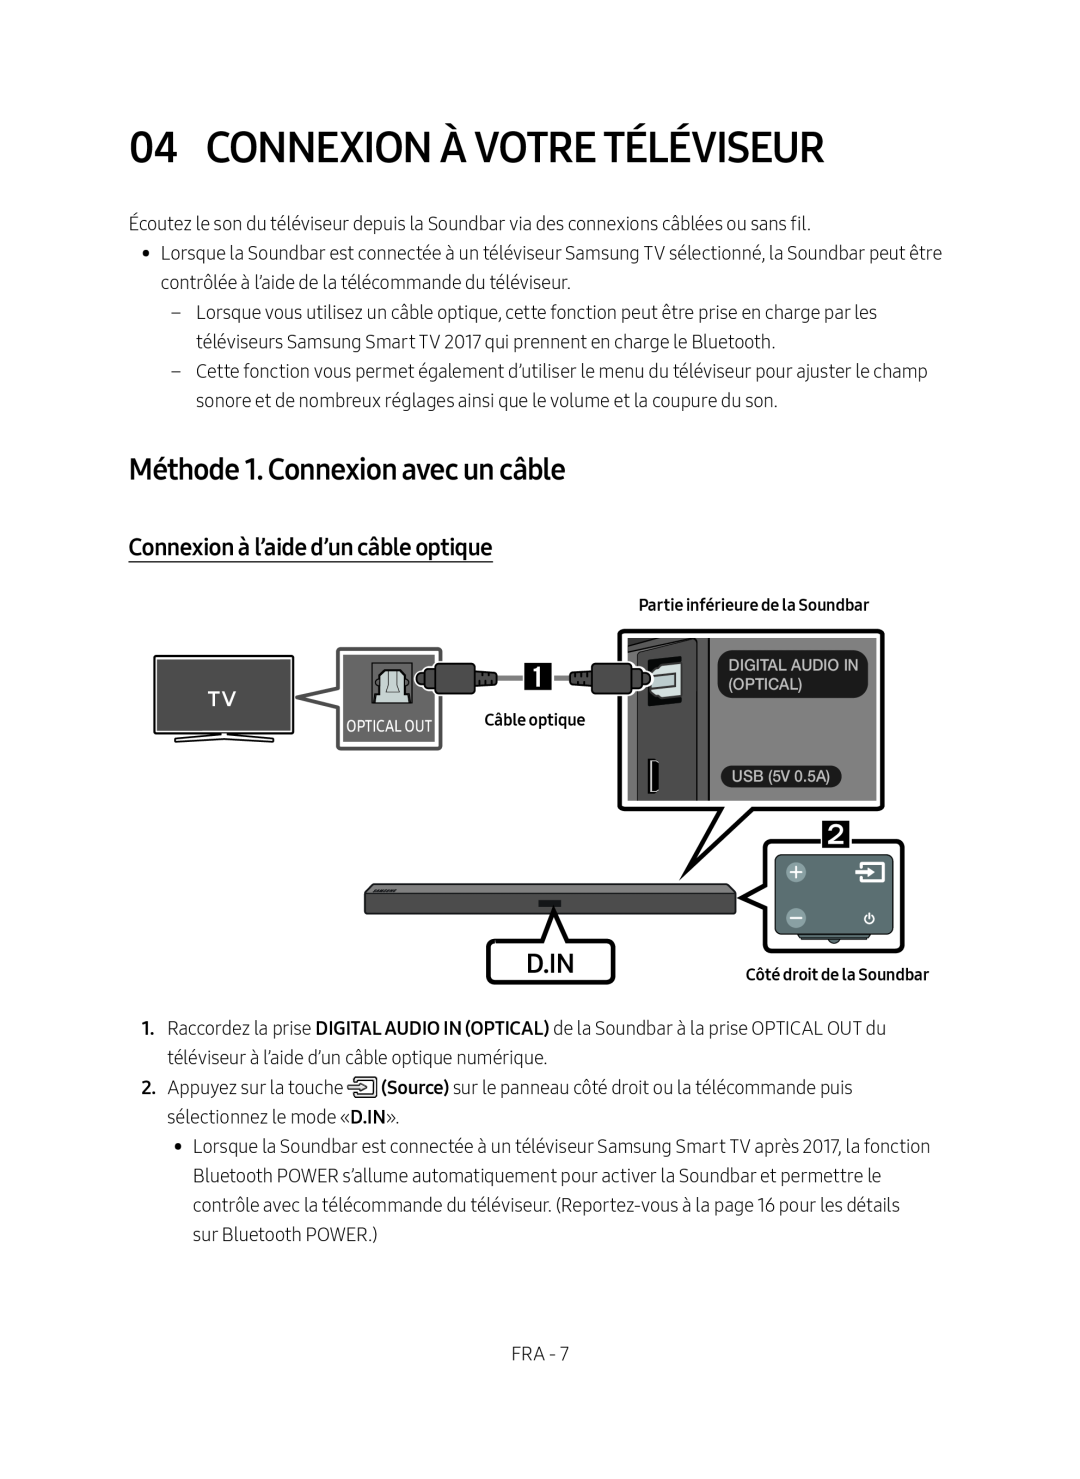 Samsung HW-M450/EN Connexion À Votre Téléviseur, Méthode 1. Connexion avec un câble, Connexion à l’aide d’un câble optique 